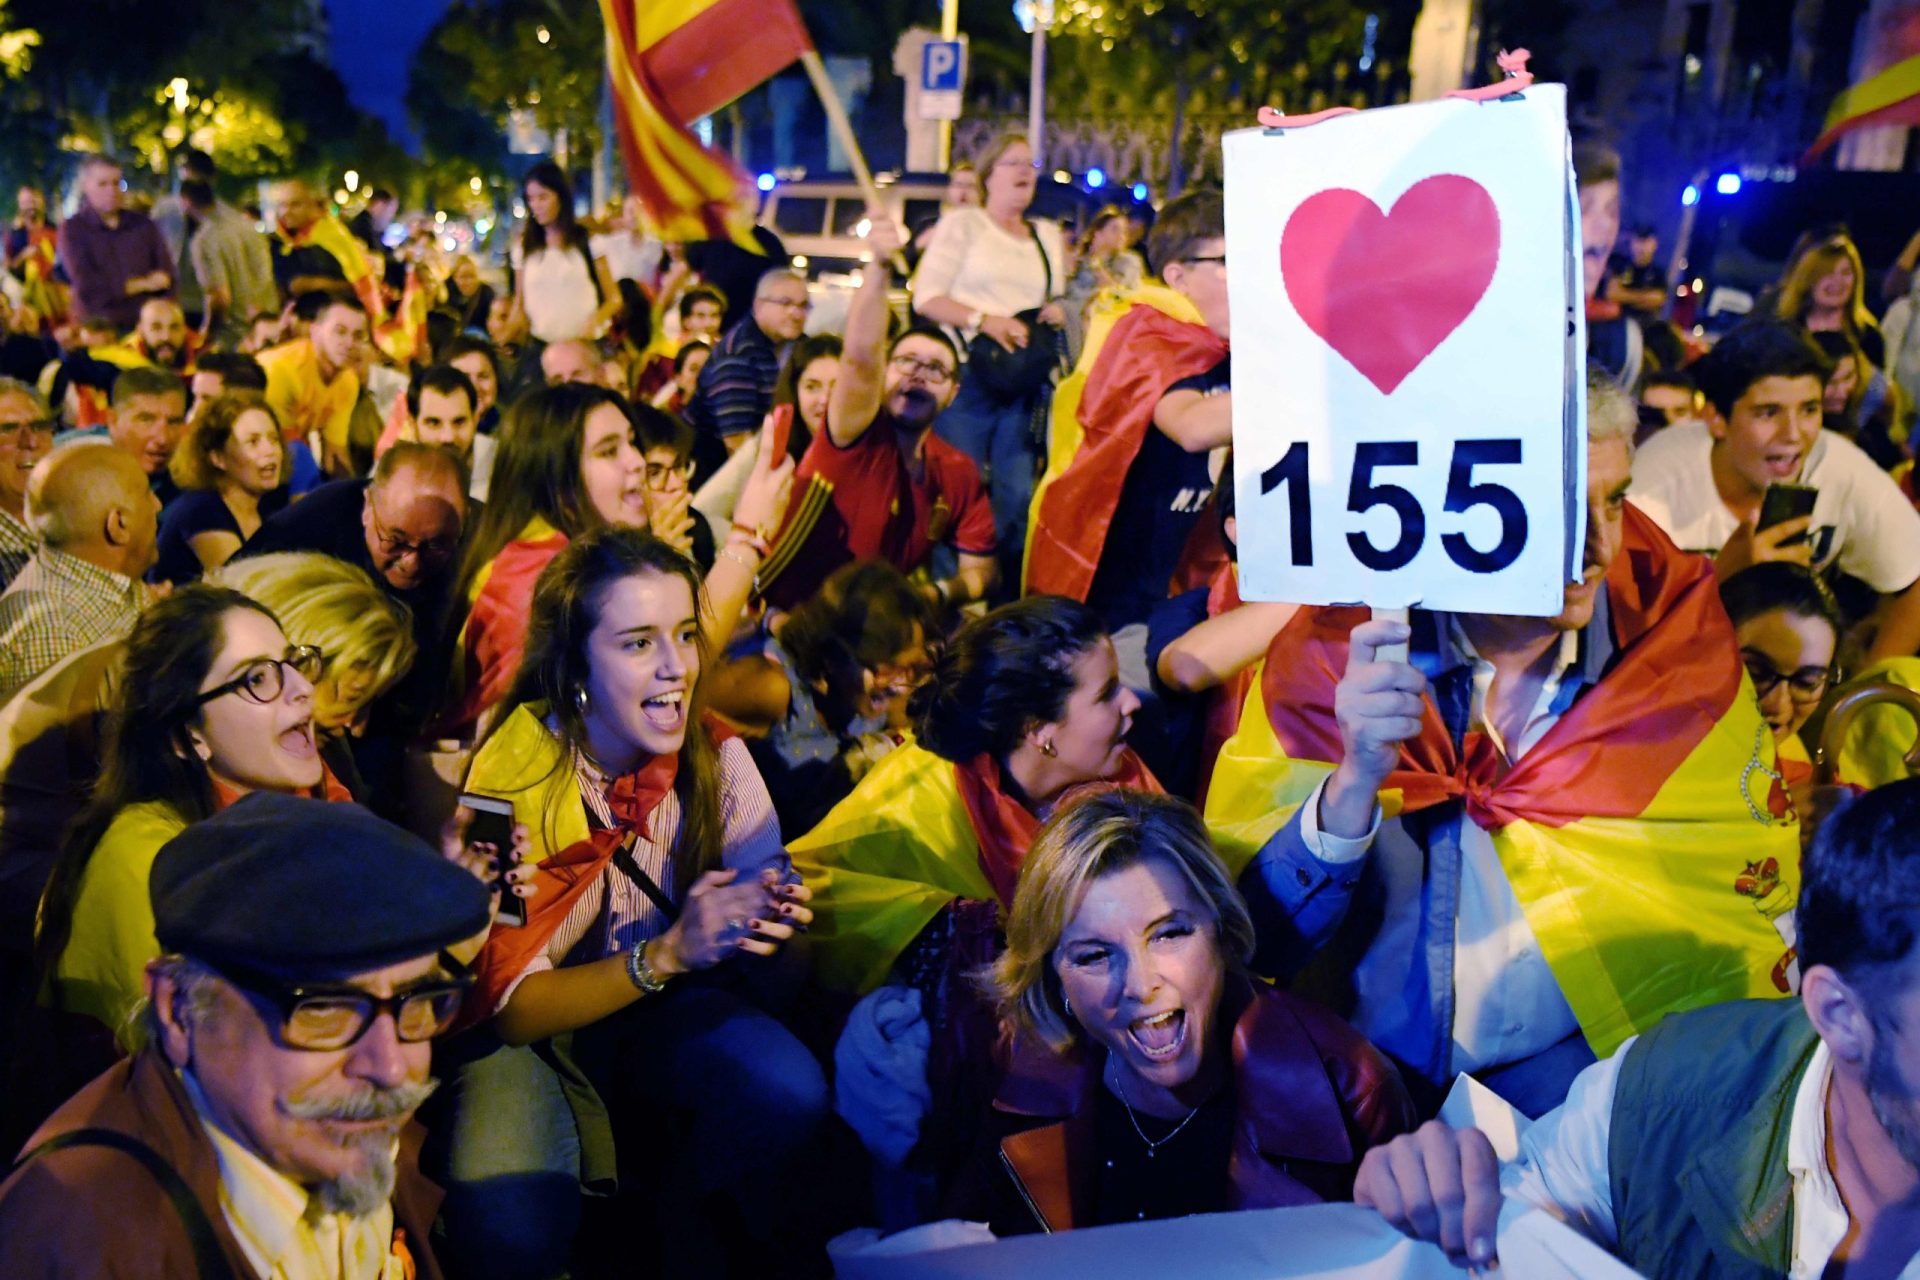 Tribunal Constitucional suspende sessão em que catalães planeavam declarar independência